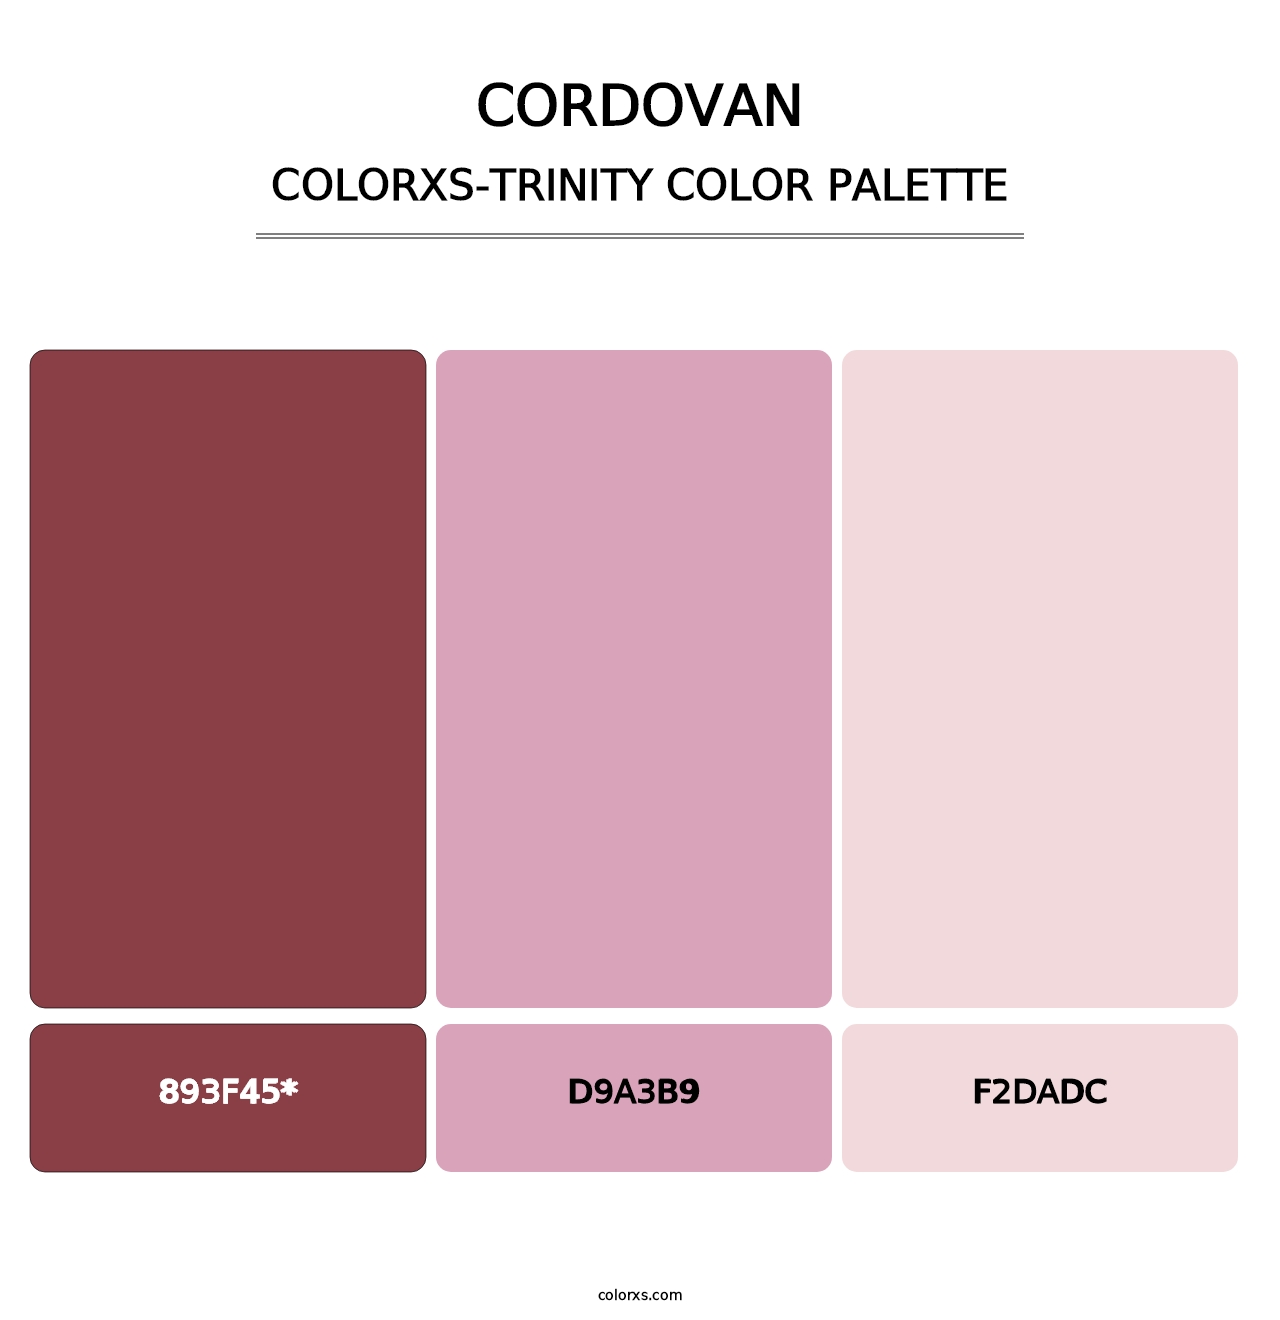 Cordovan - Colorxs Trinity Palette